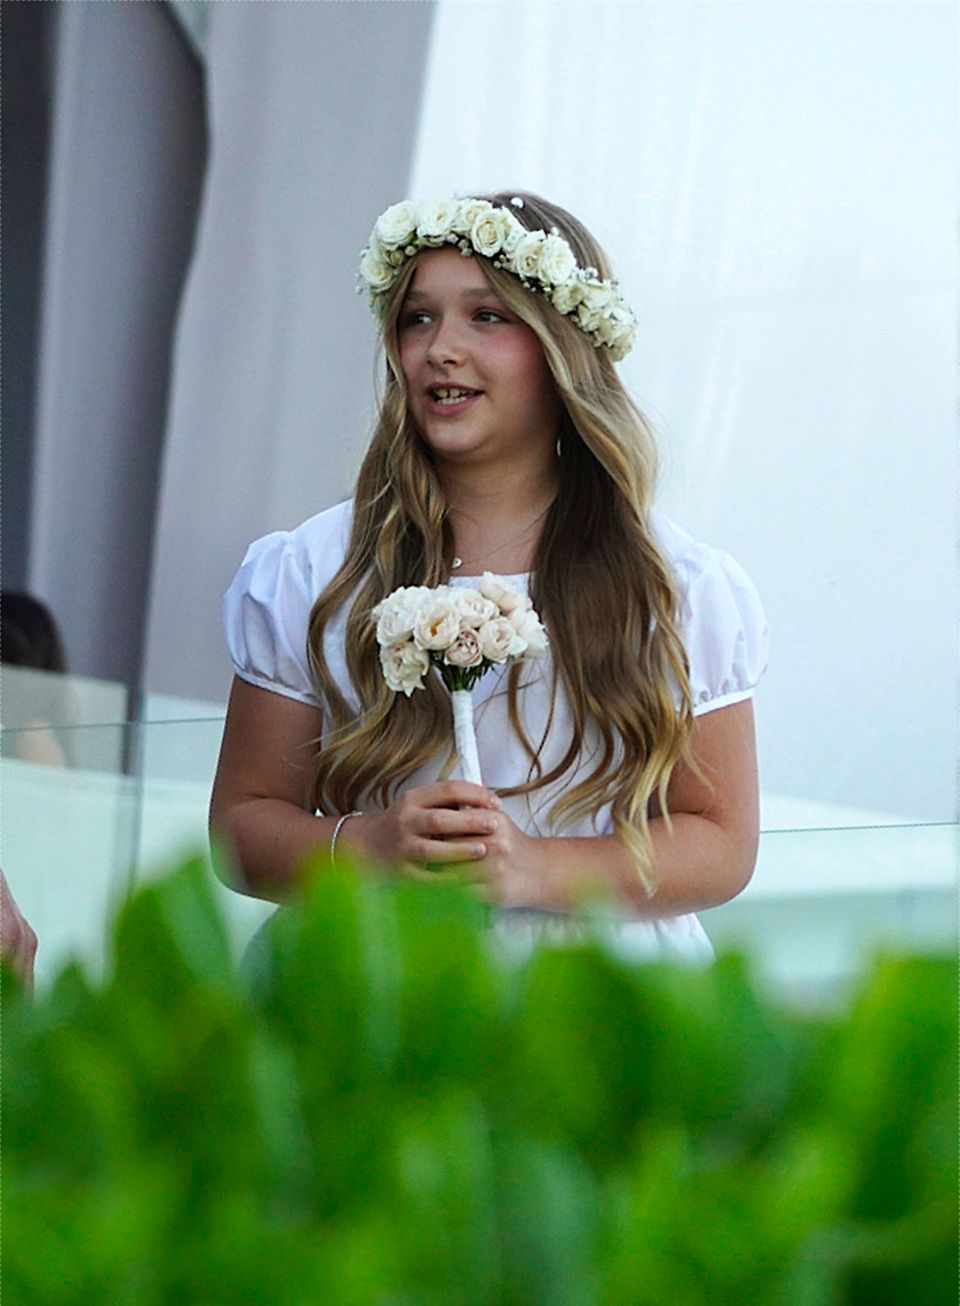 Brooklyns Schwester Harper gehört zu den Blumenkinder und sieht mit Rosenkranz und weißem Kleid einfach bezaubernd aus.